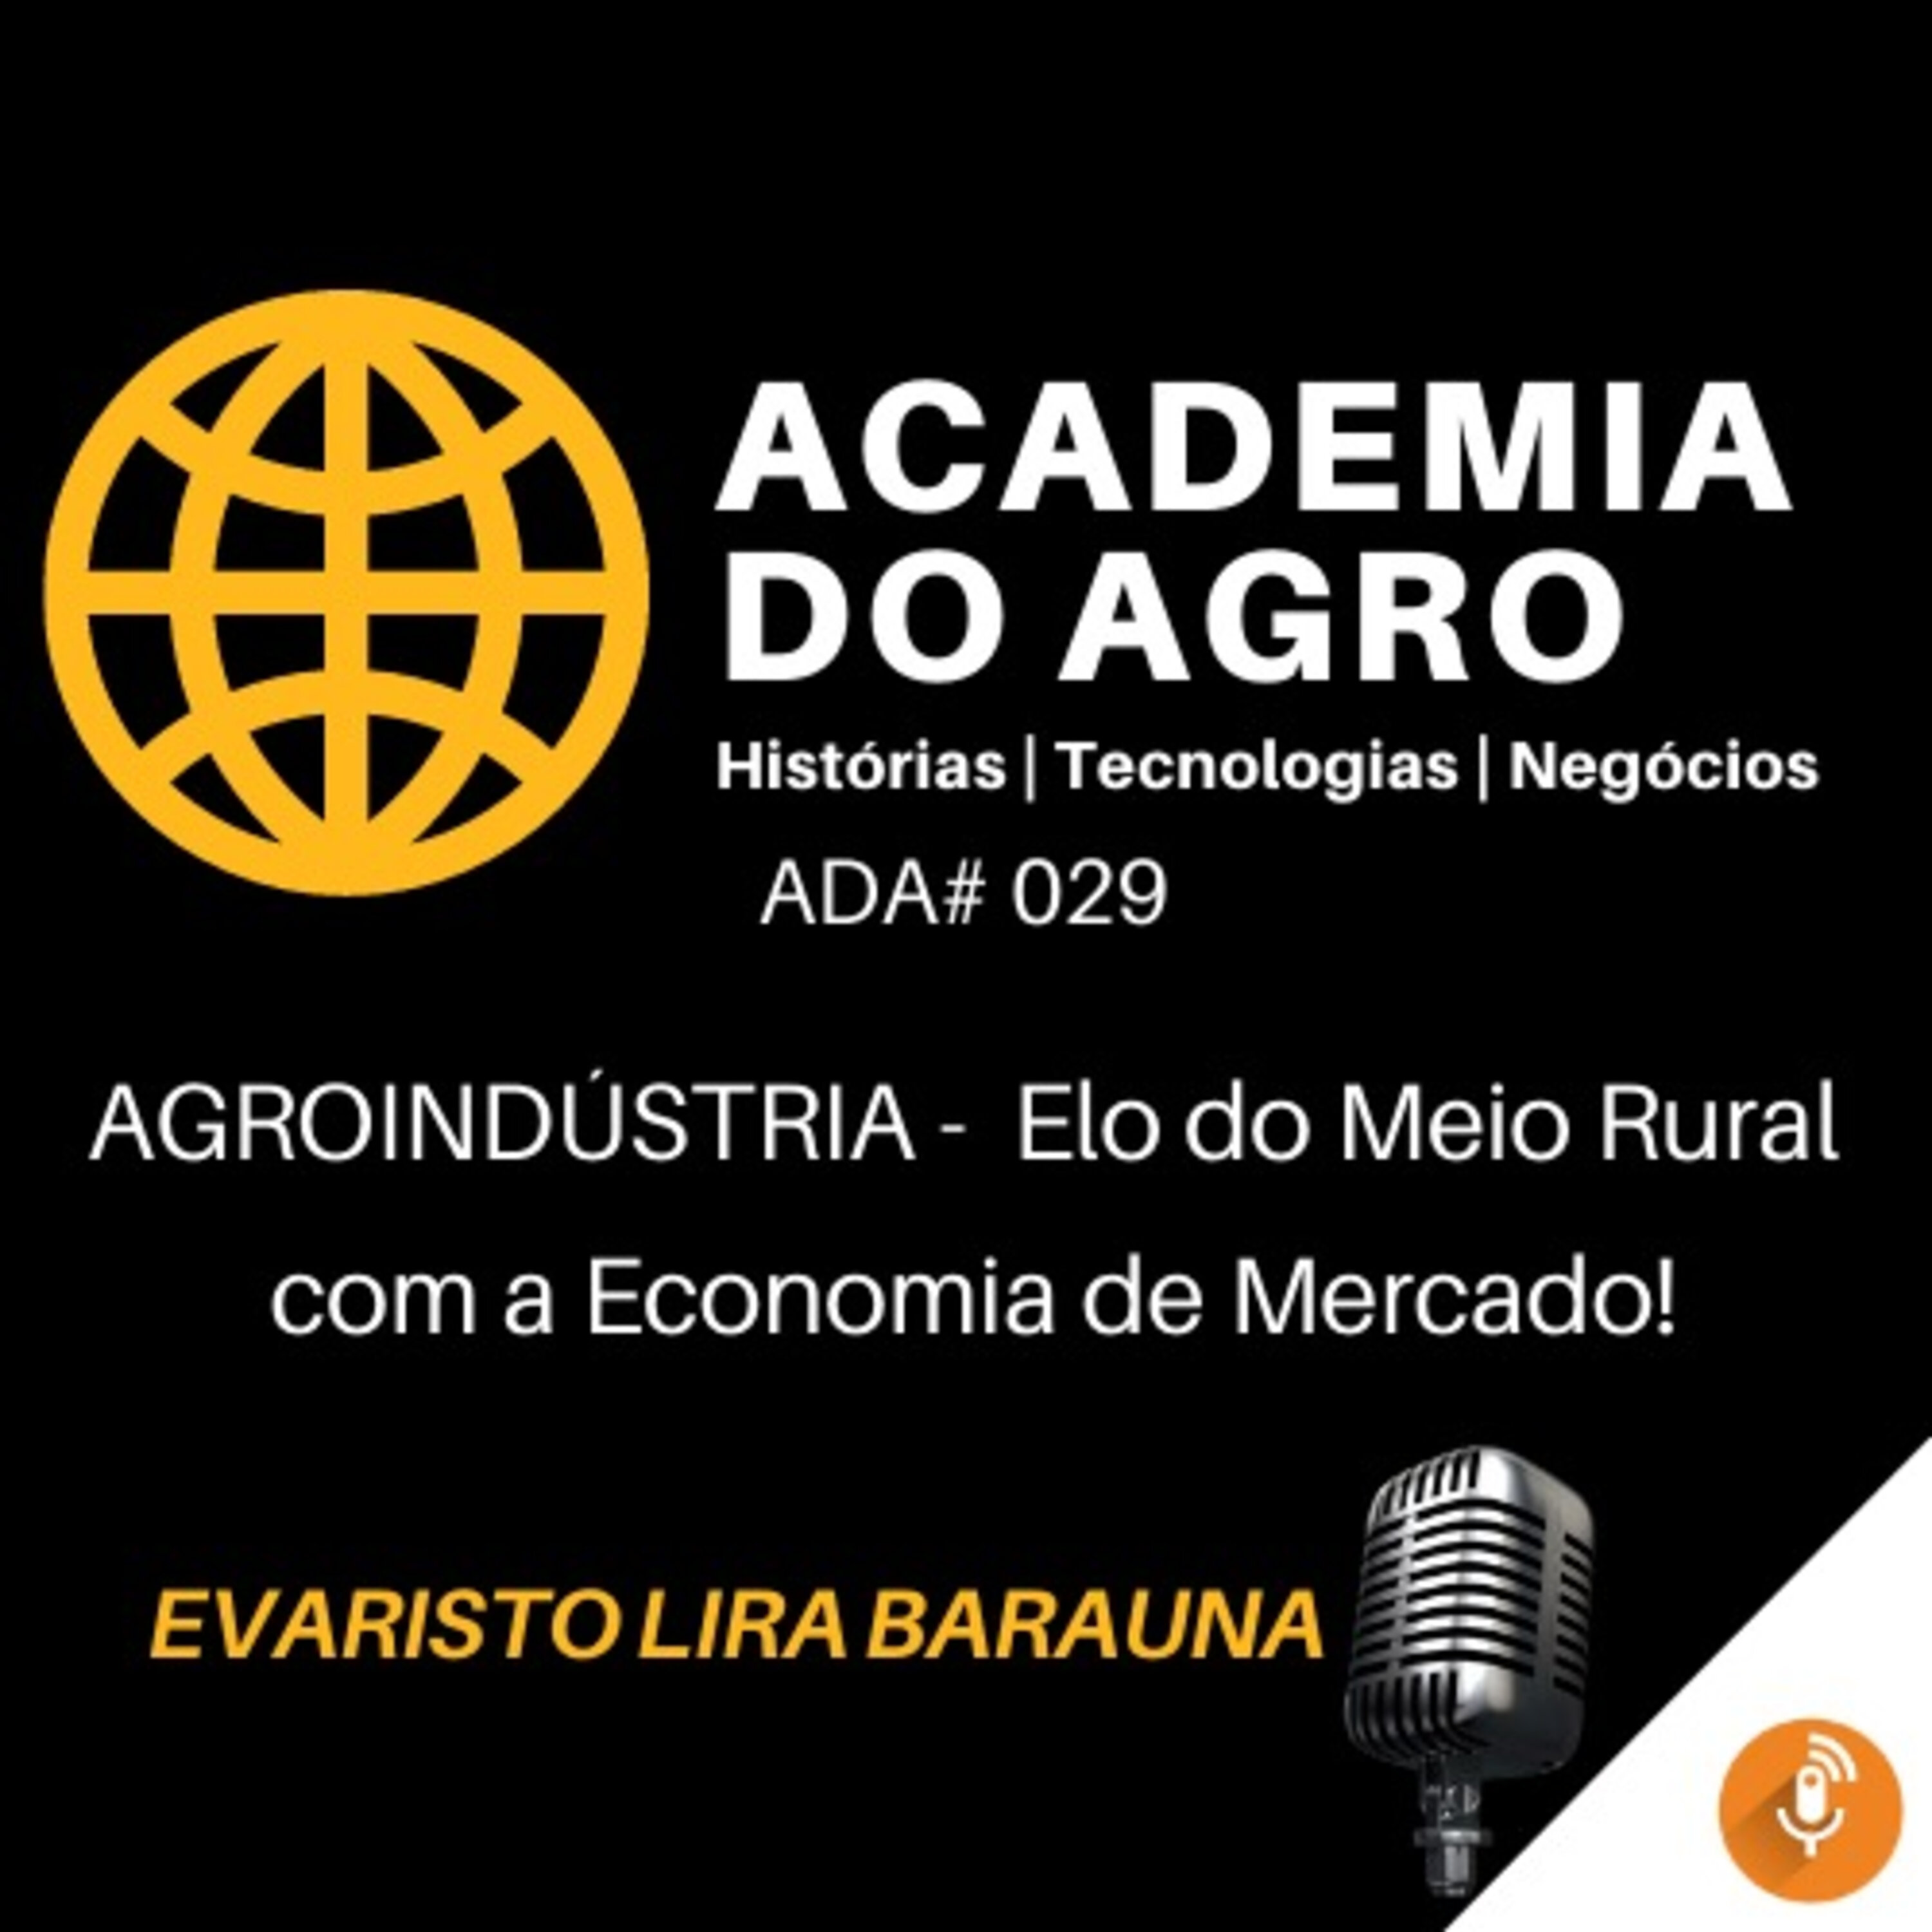 Agroindústria - Elo do Meio Rural com a Economia de Mercado!